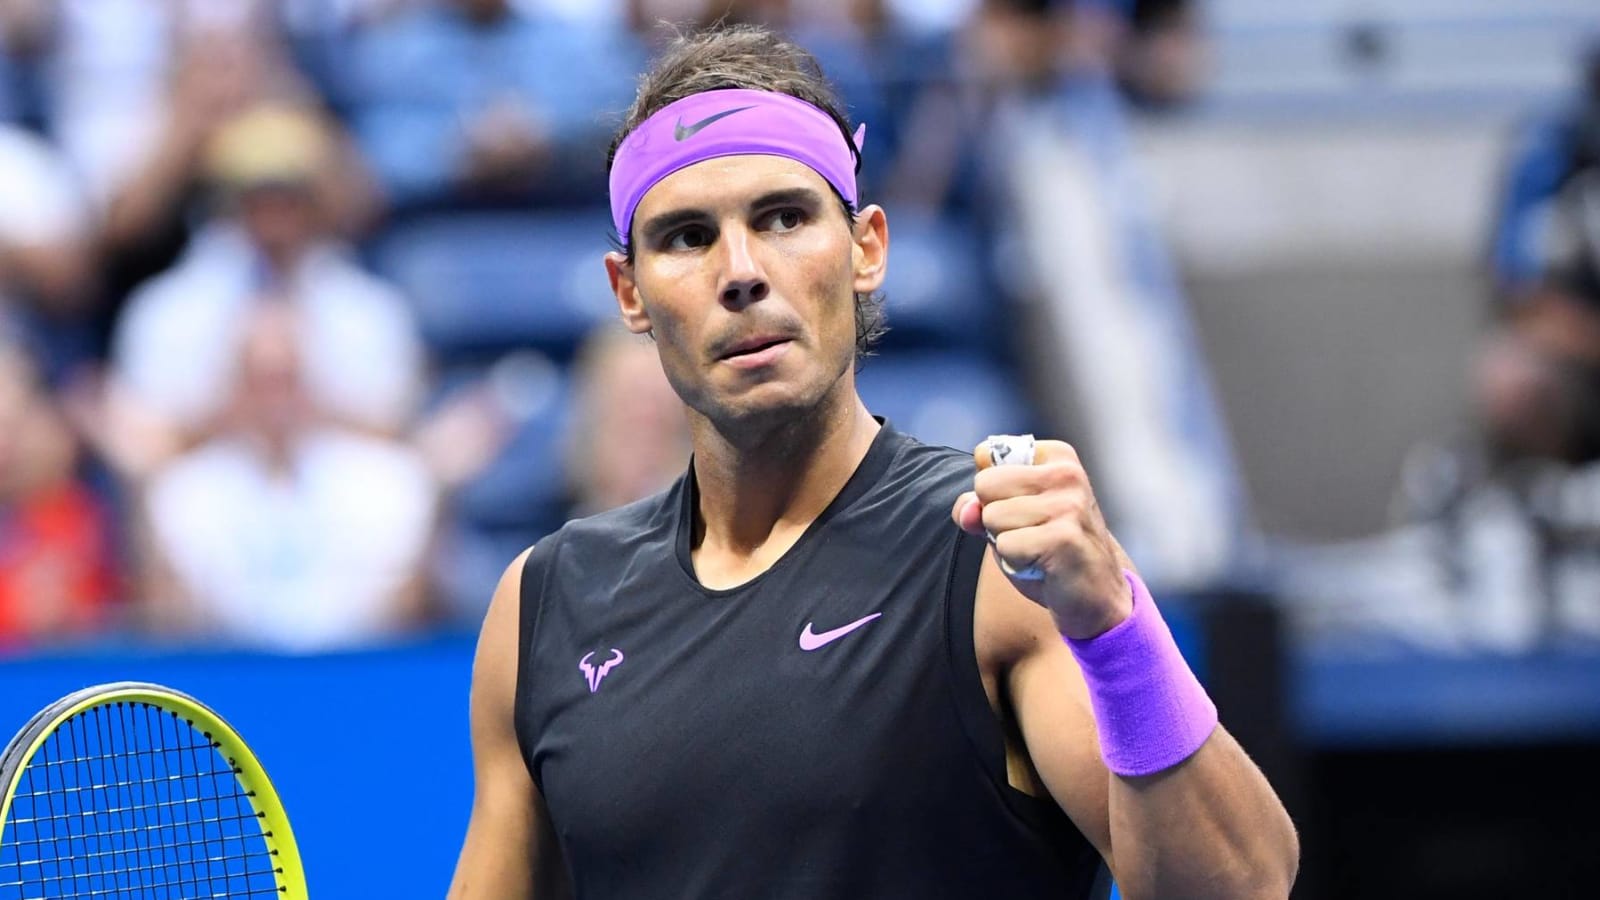 Rafael Nadal: Tennis in 2020 is 'lost,' prefers to focus on 2021